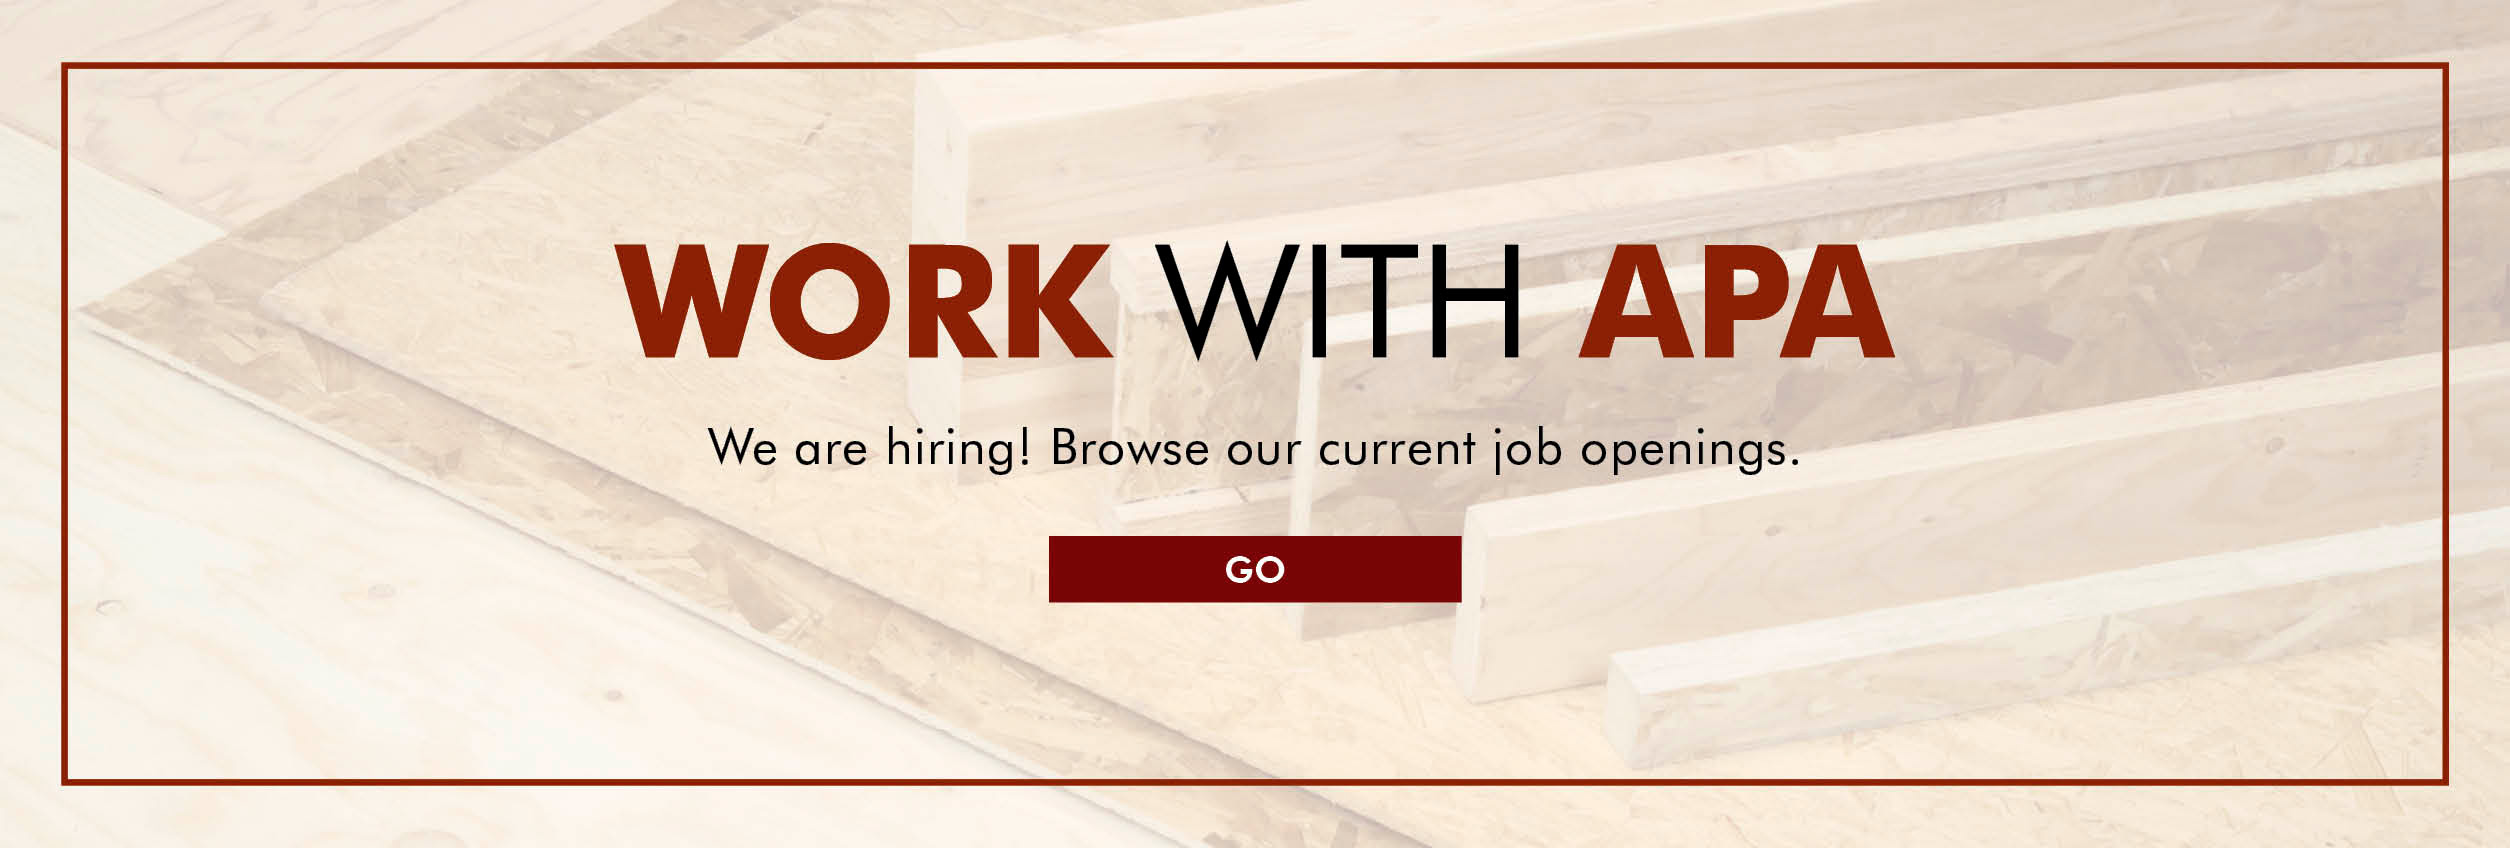 APA is hiring! See job openings.